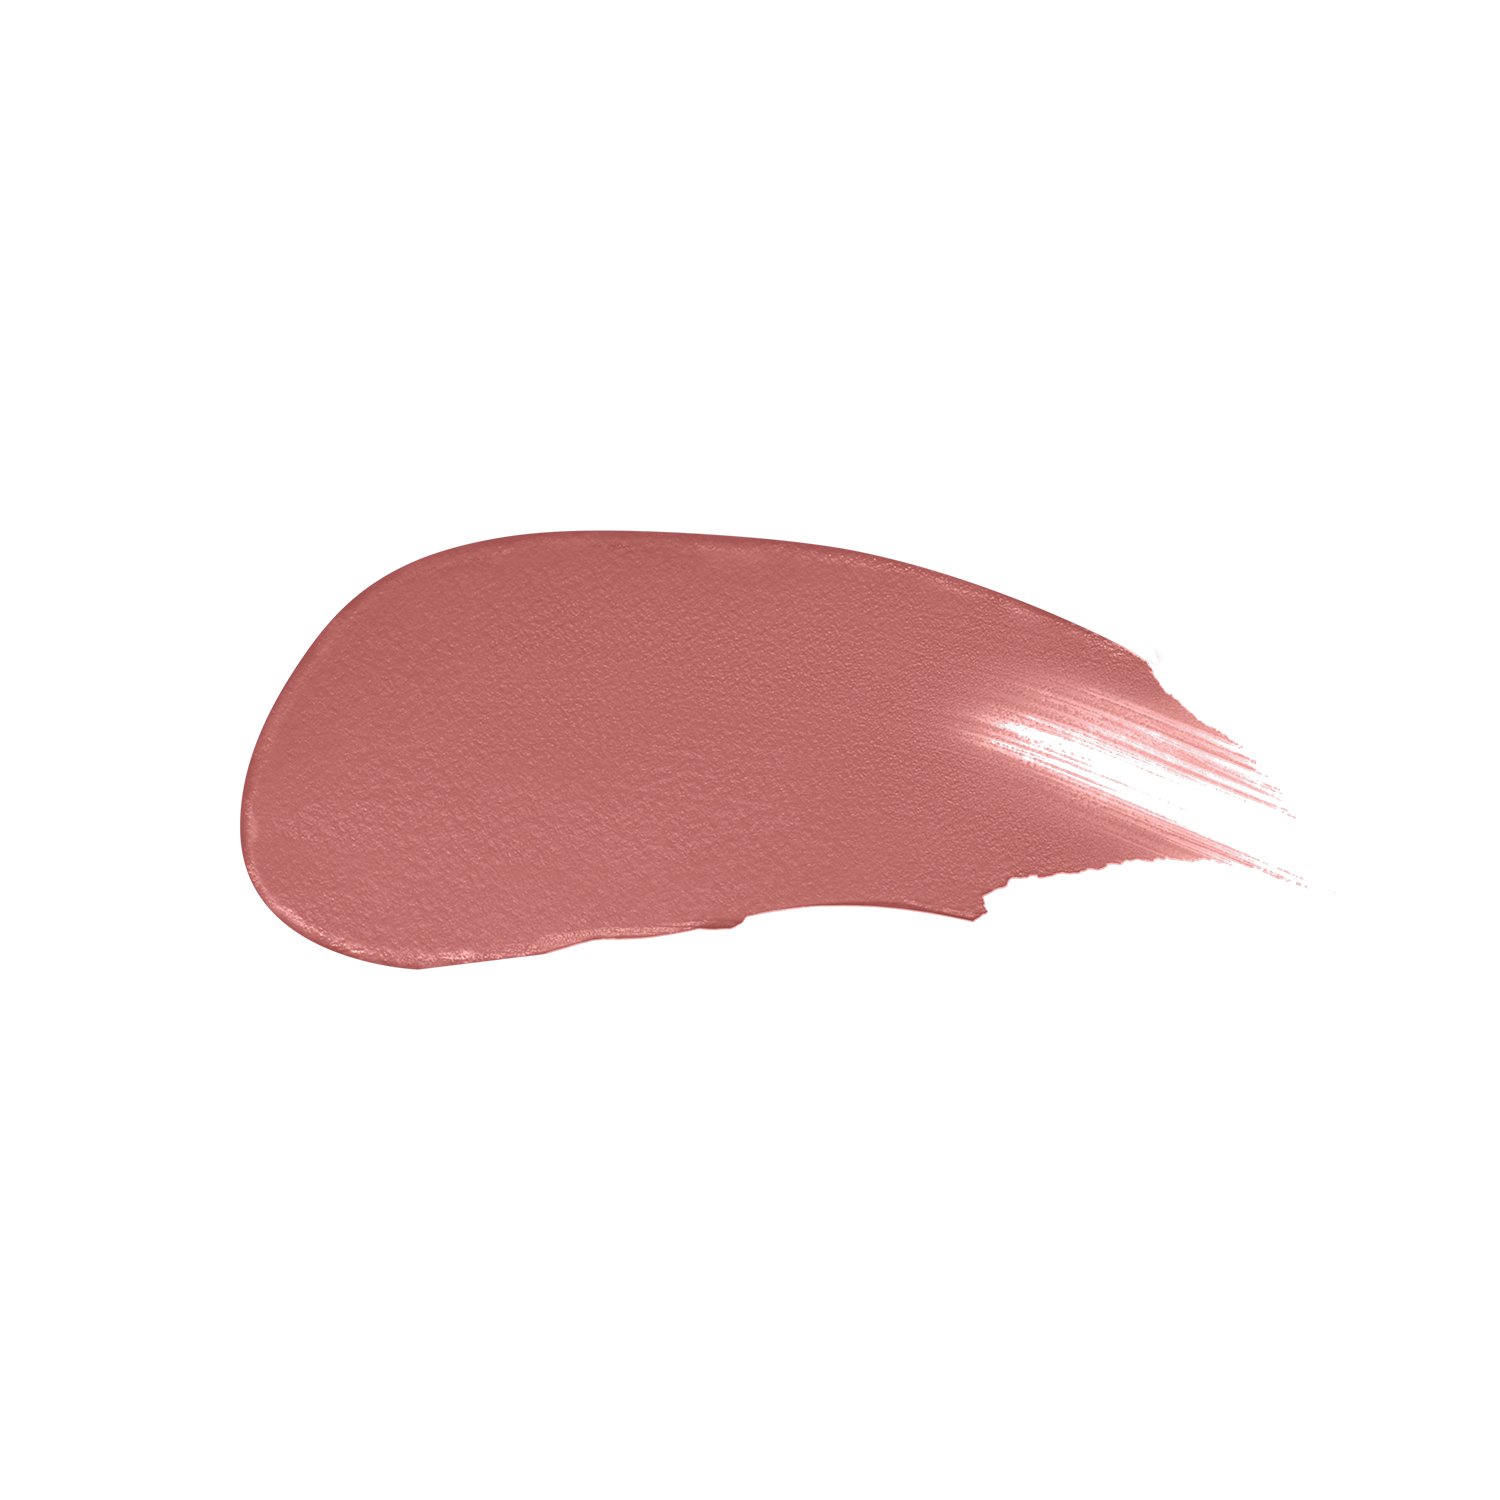 Жидкая помада для губ Max Factor Colour Elixi Matte Soft, тон 005 (Sand Cloud), 4 мл (8000019533128) - фото 2